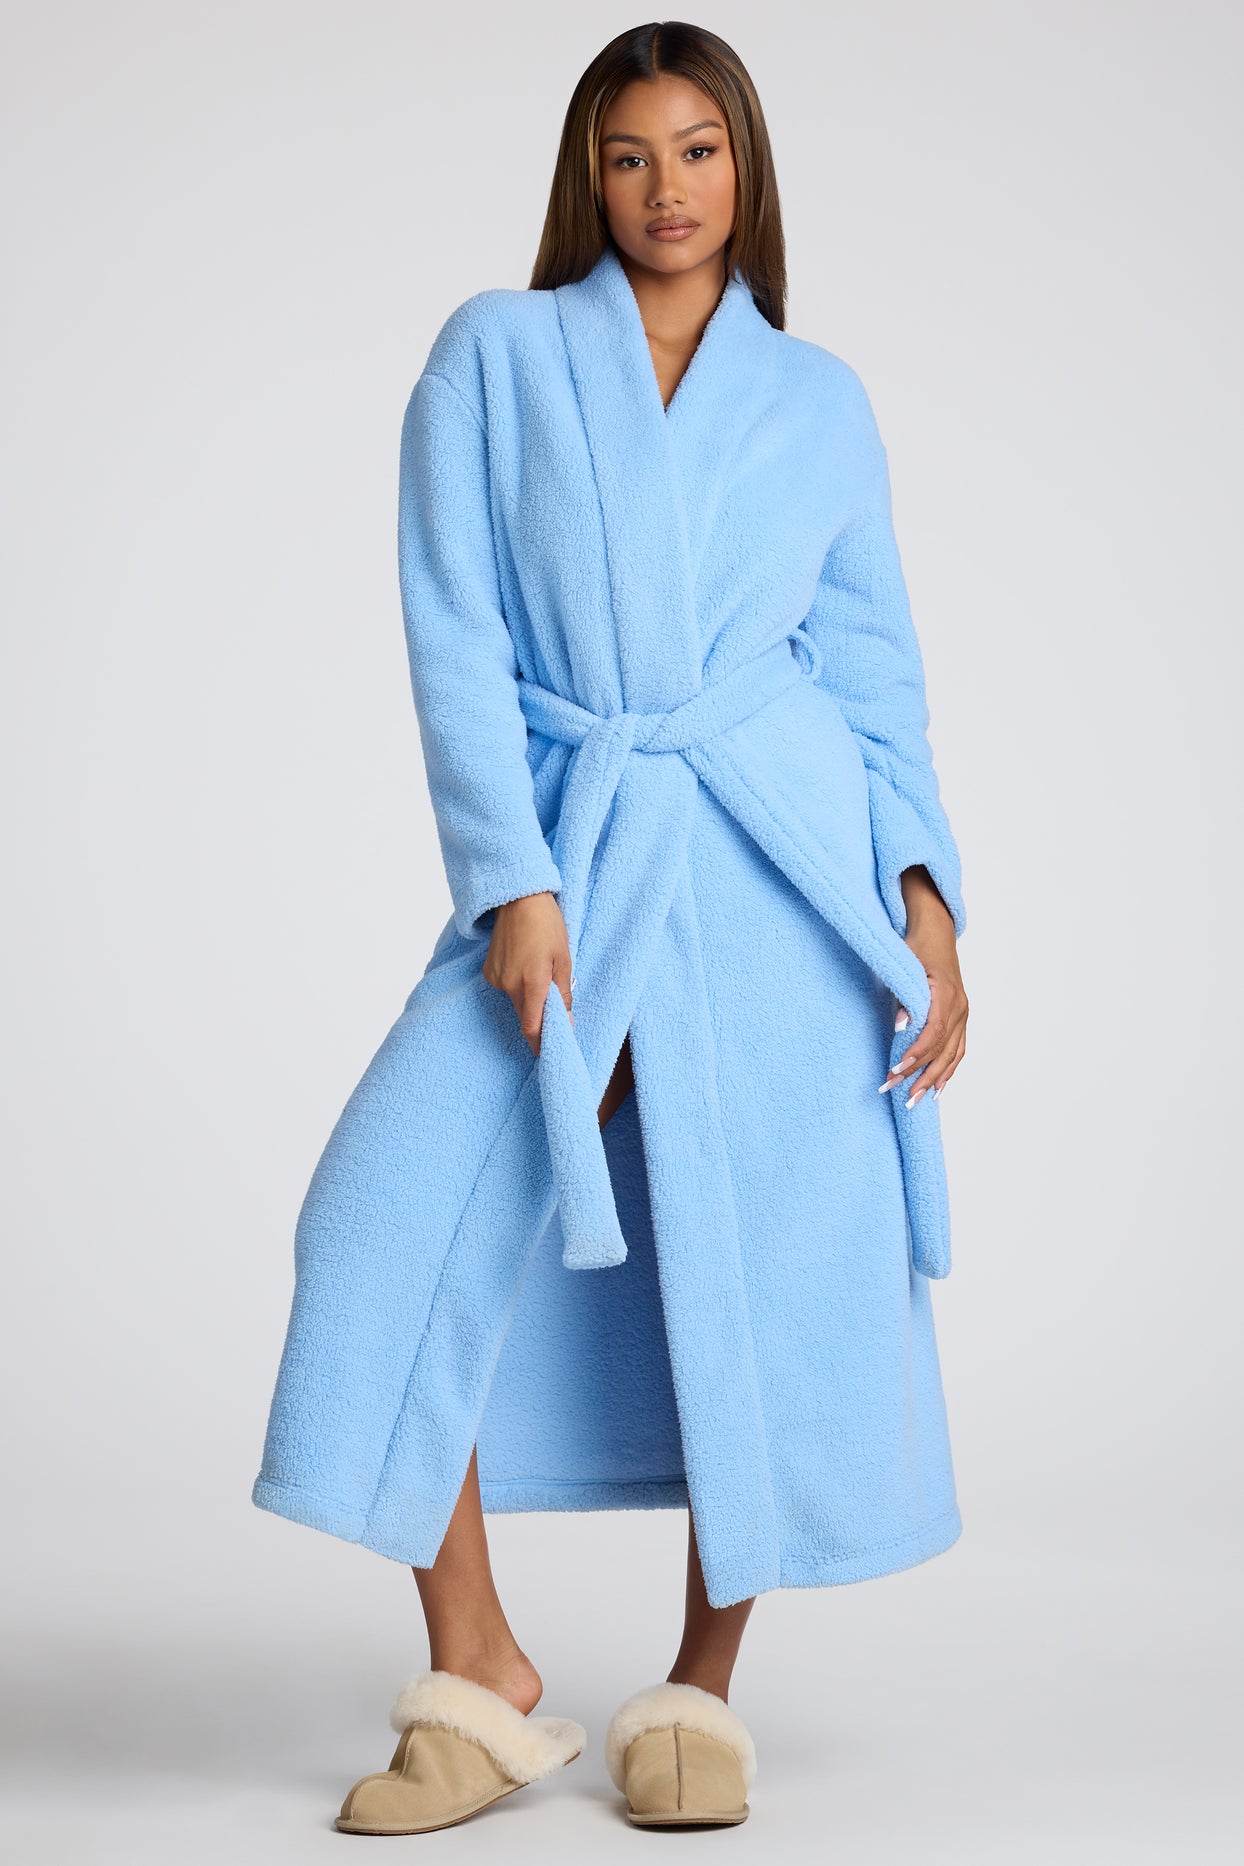 Tie Front Fleece Robe in Baby Blue